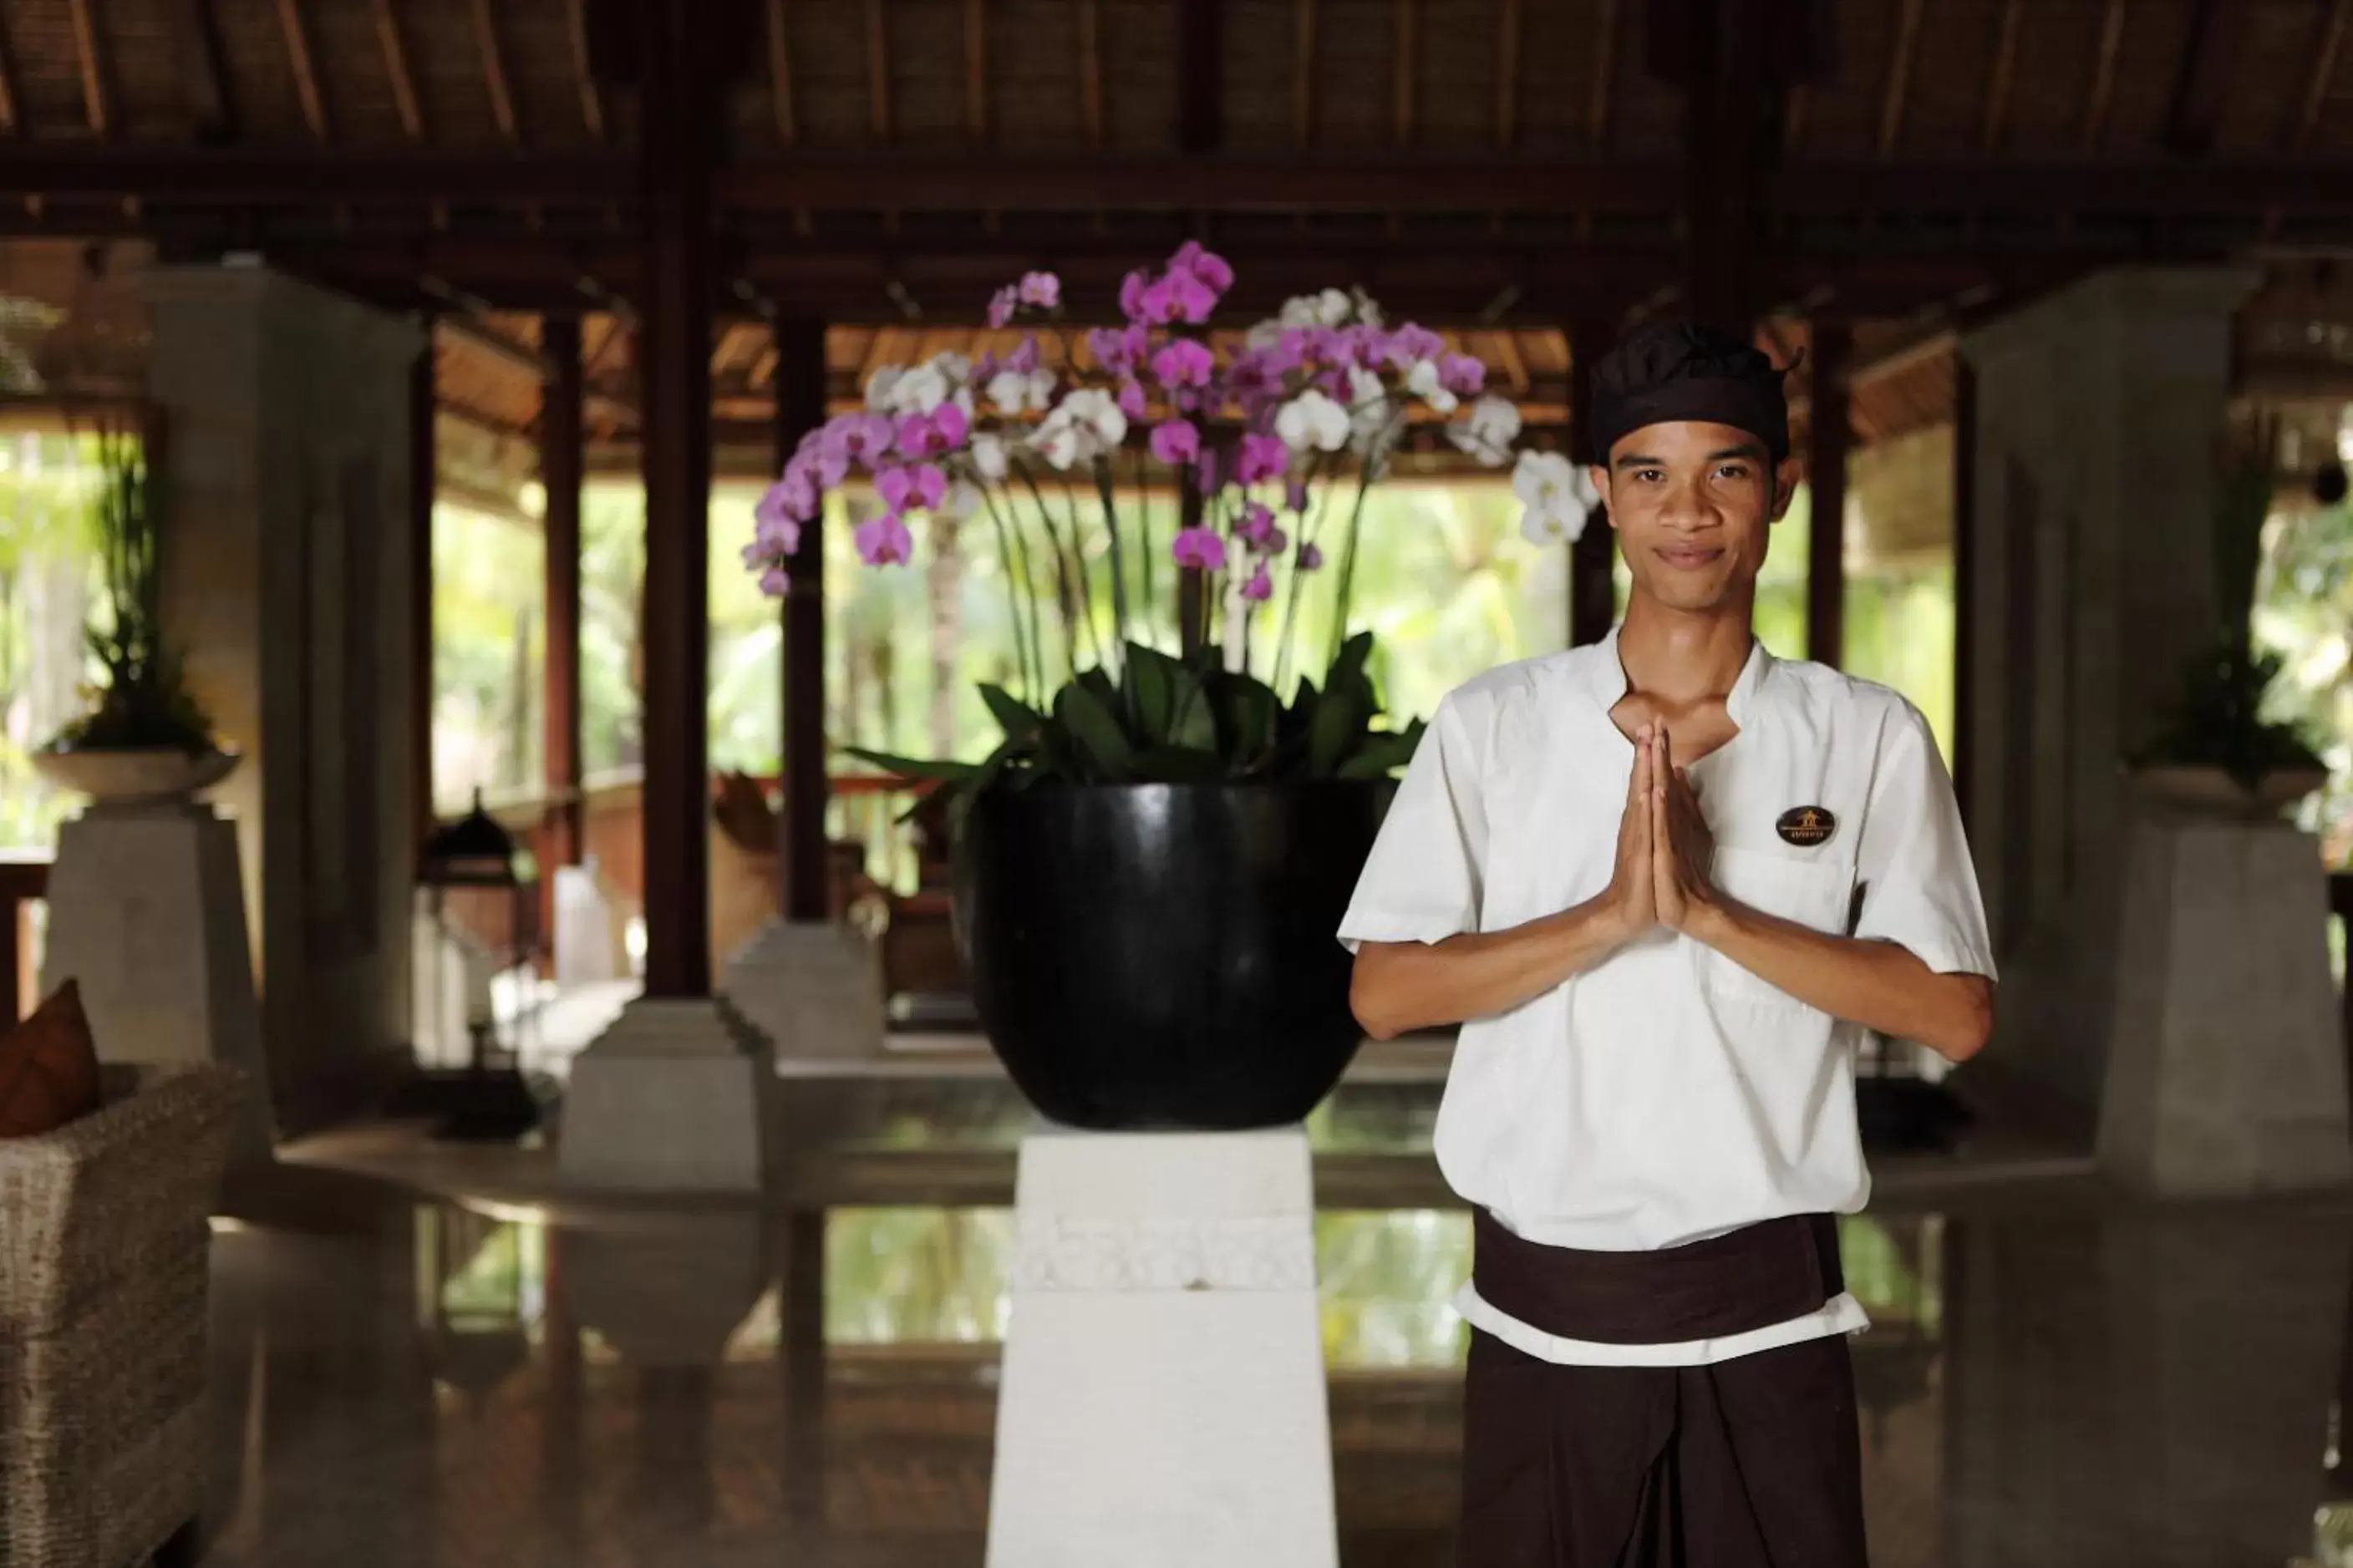 Staff in The Ubud Village Resort & Spa